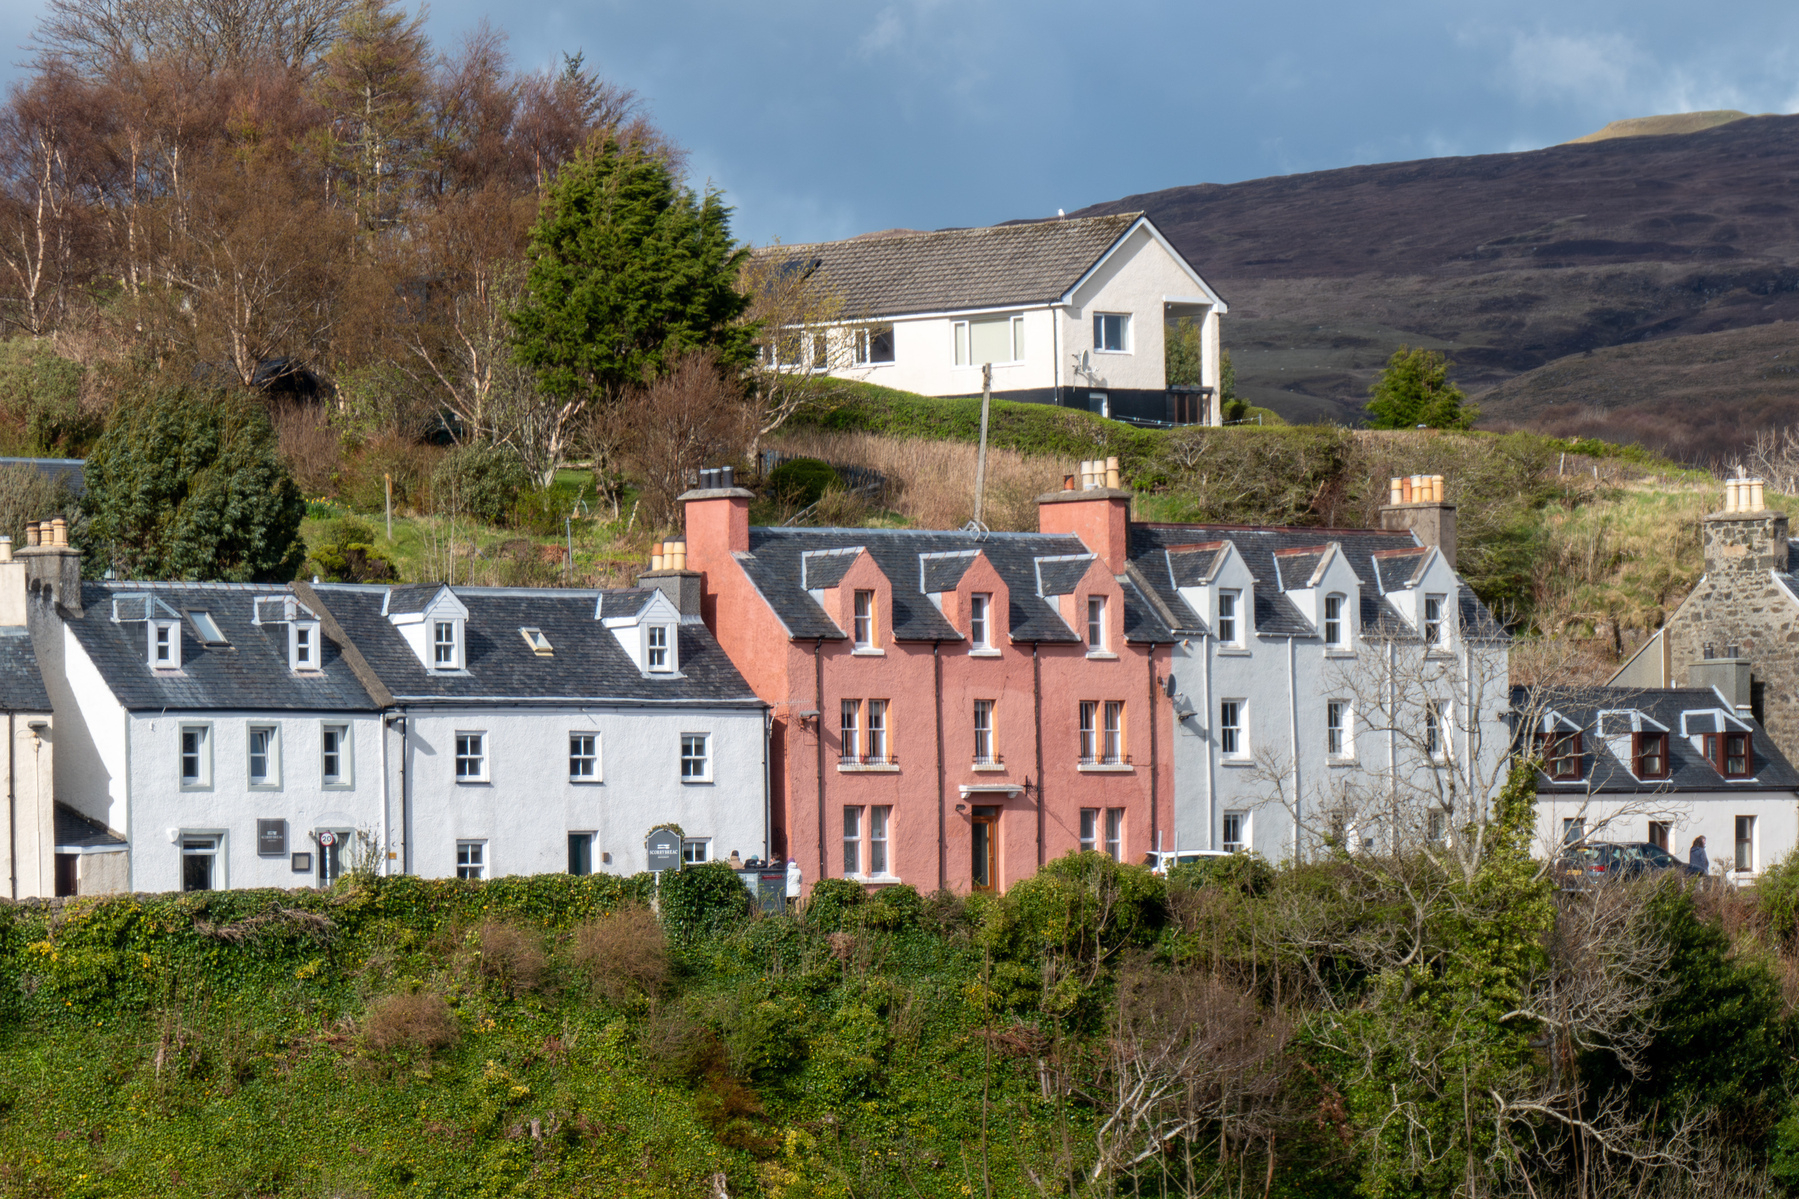 A row of coloured terrace houses.